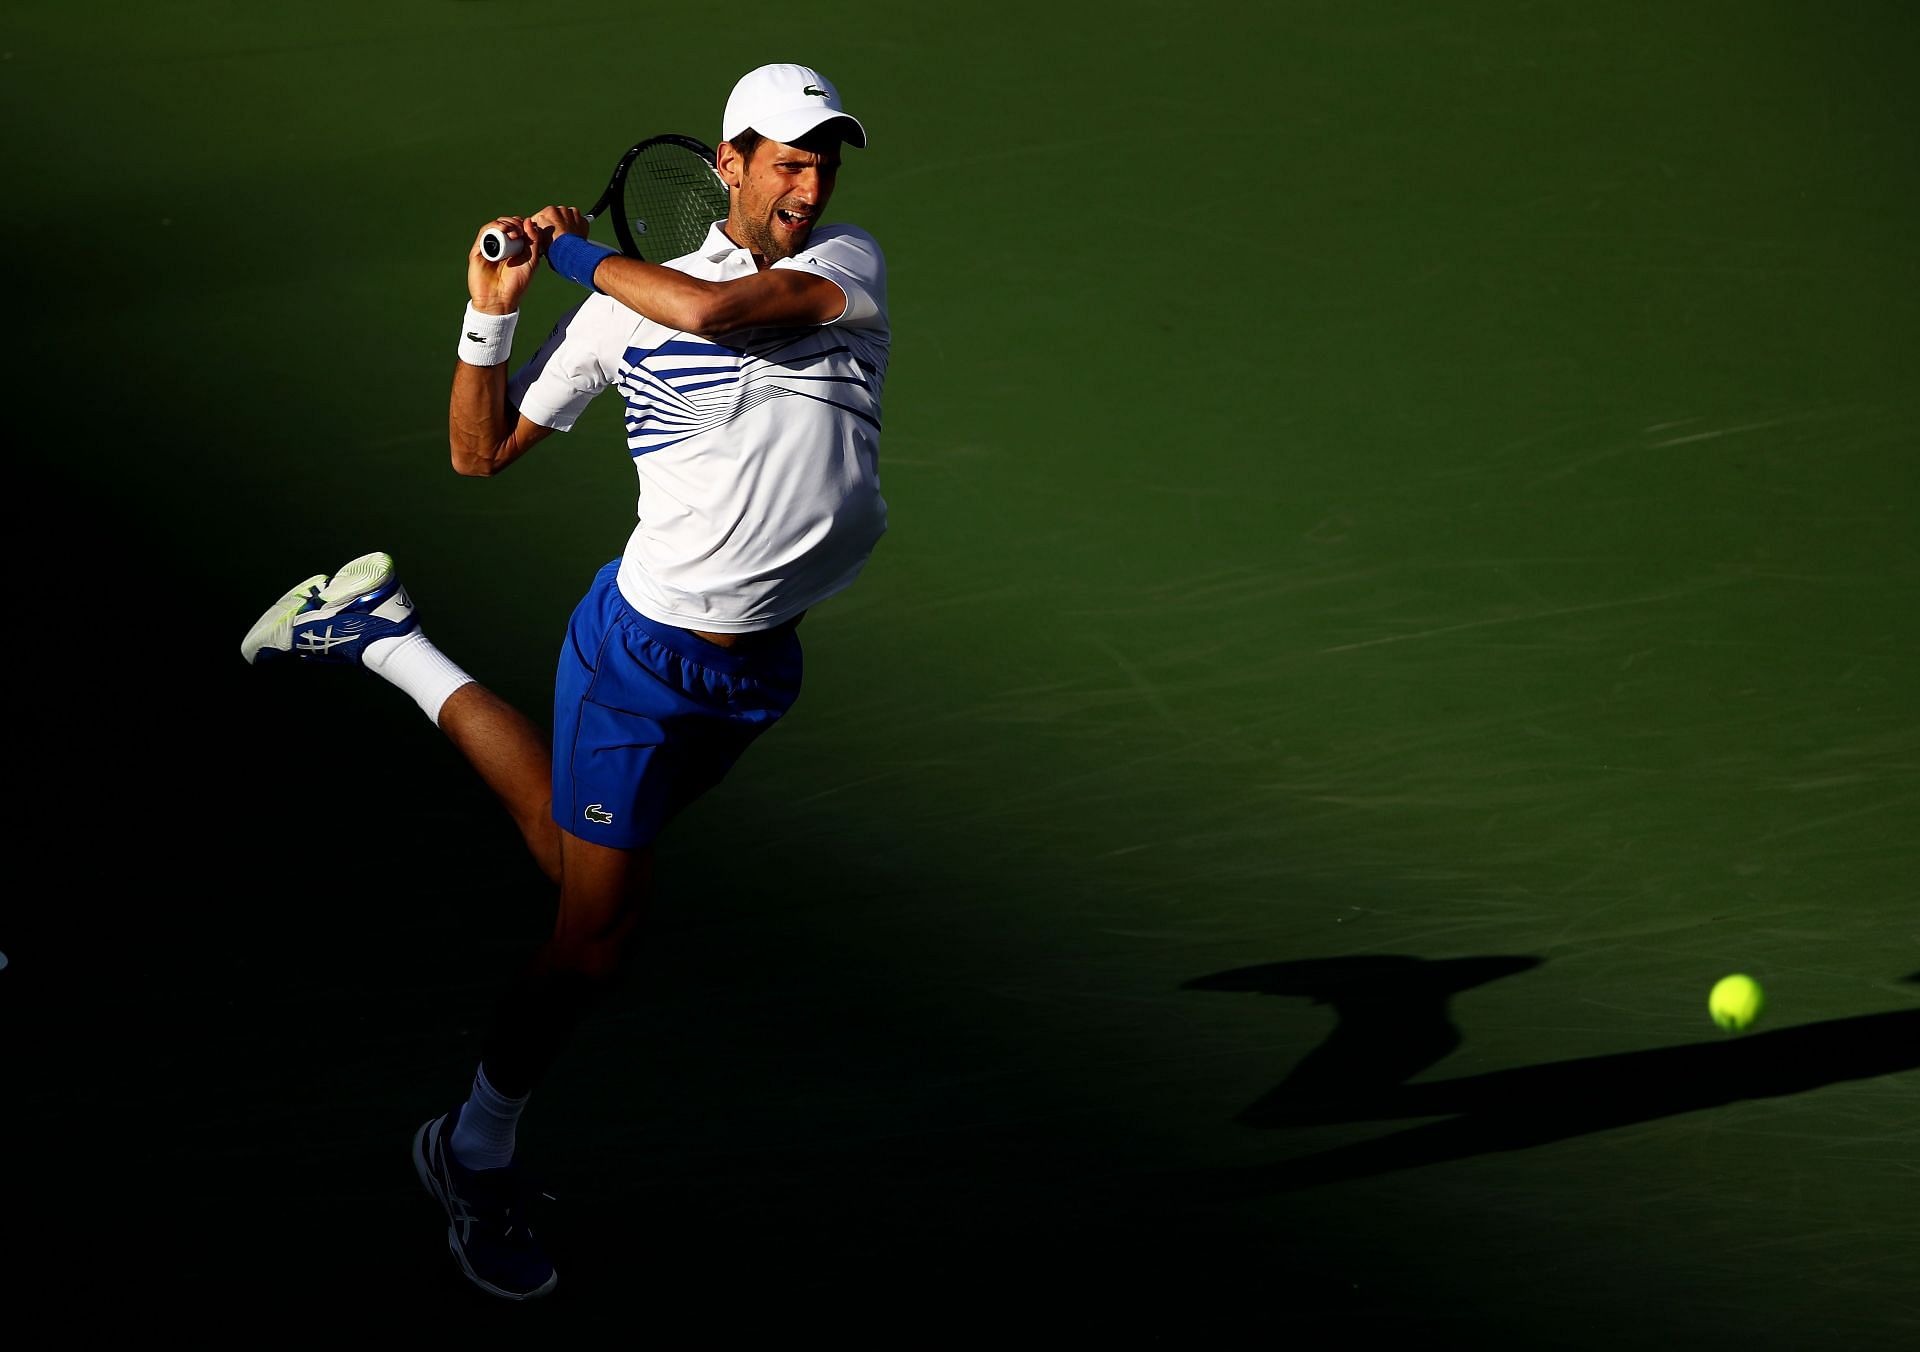 Novak Djokovic in action in Indian Wells 2019